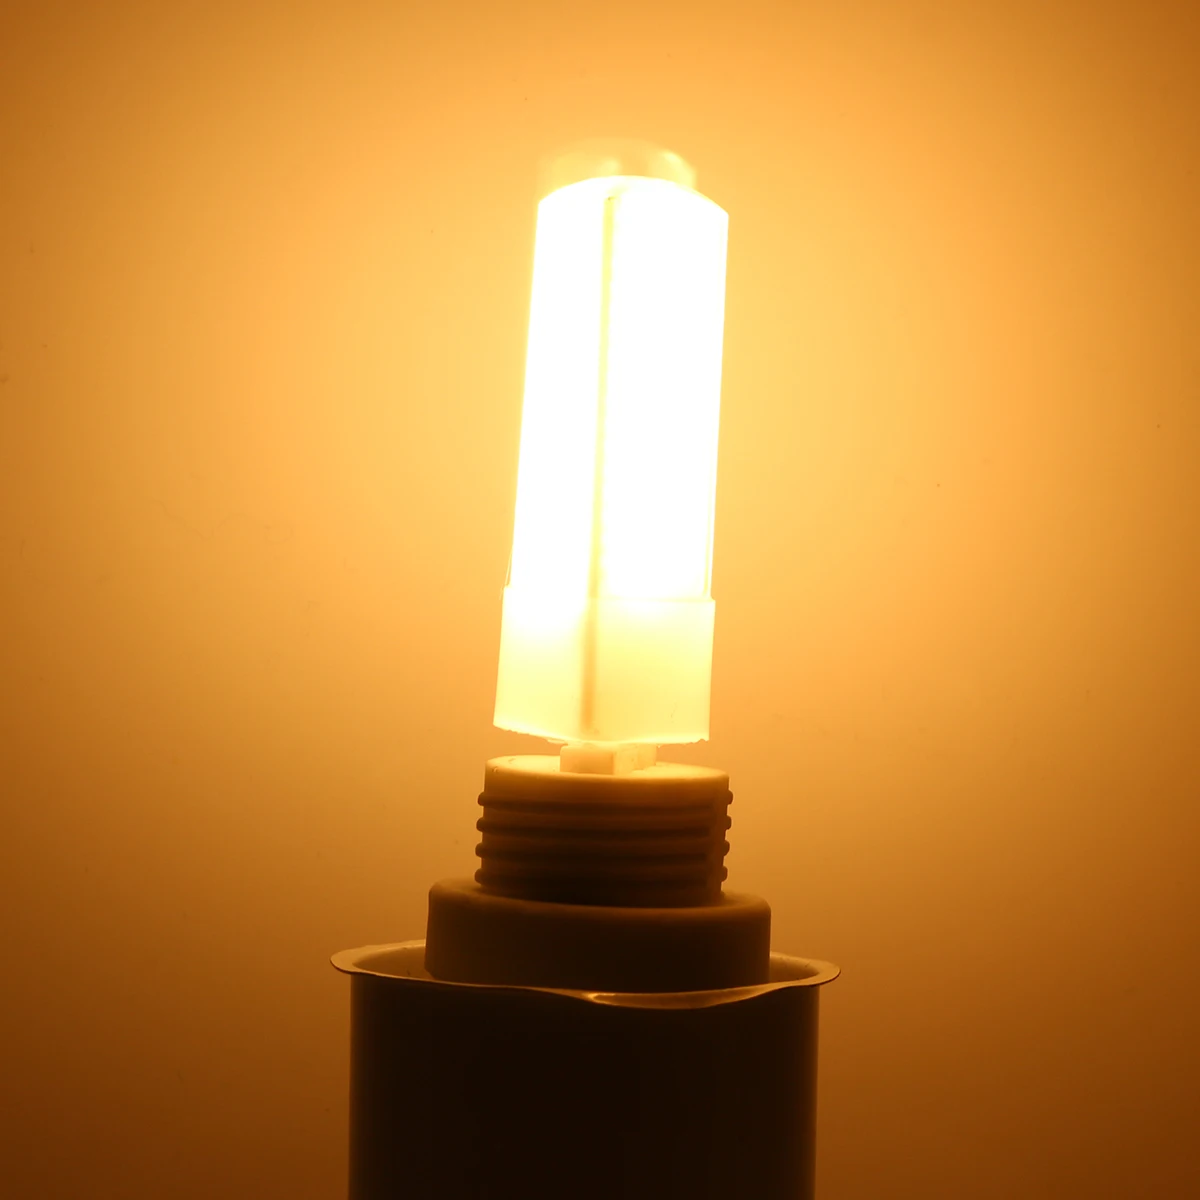 10 шт. затемнения в 3 цвета Температура 3 Вт G9 капсулы светодиодная заменяемая лампа для галогенной лампы замена галогеновой лампе лампочки